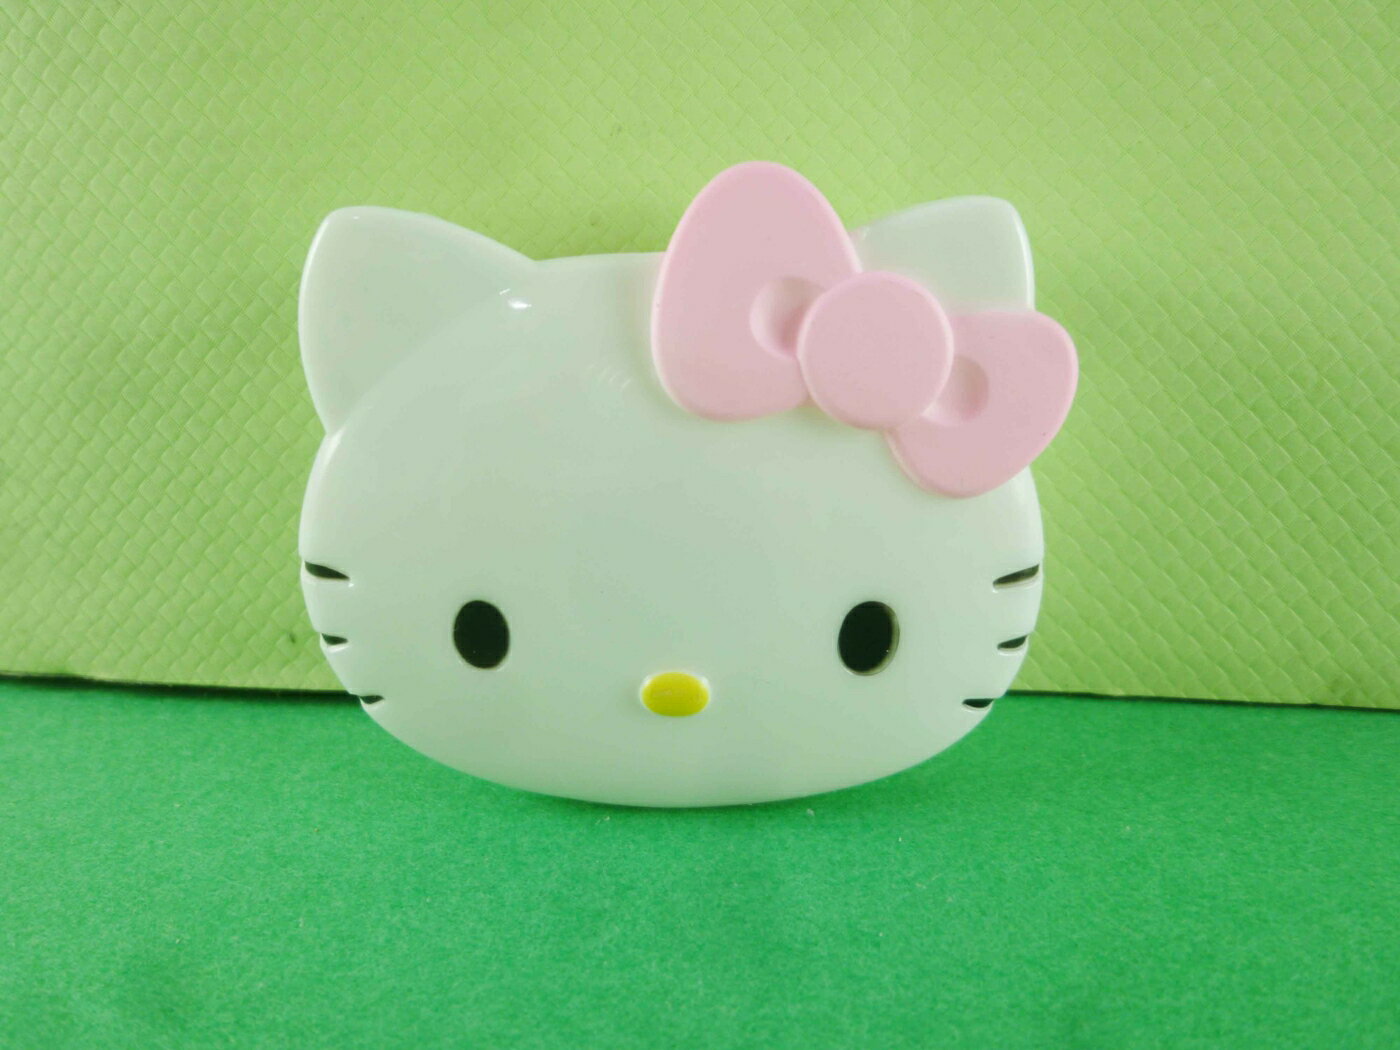 【震撼精品百貨】Hello Kitty 凱蒂貓 頭型膠台-粉色 震撼日式精品百貨